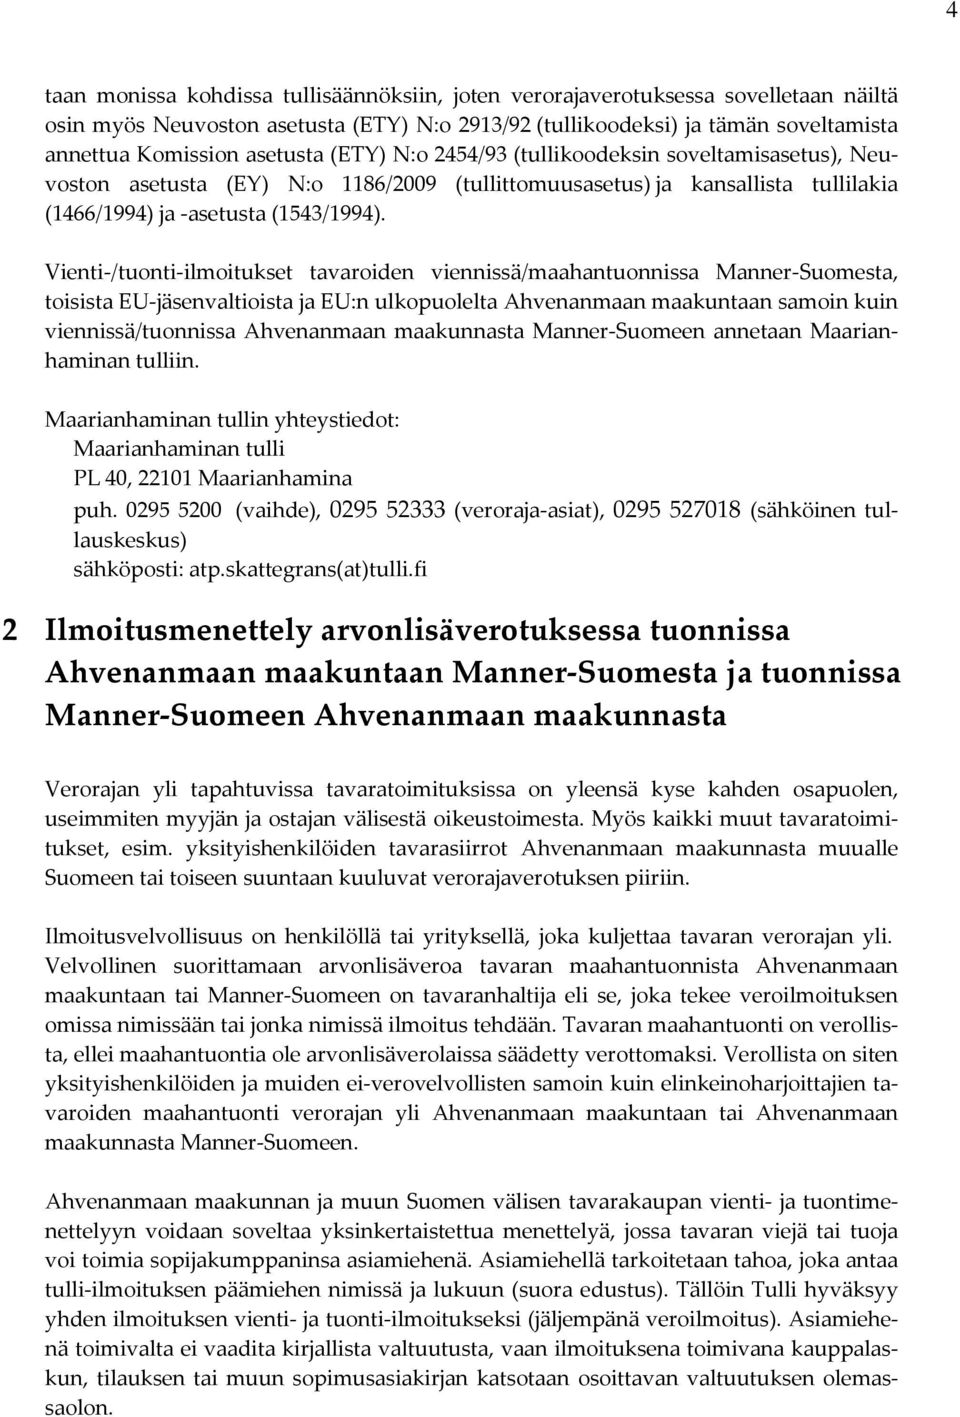 Vienti-/tuonti-ilmoitukset tavaroiden viennissä/maahantuonnissa Manner-Suomesta, toisista EU-jäsenvaltioista ja EU:n ulkopuolelta Ahvenanmaan maakuntaan samoin kuin viennissä/tuonnissa Ahvenanmaan